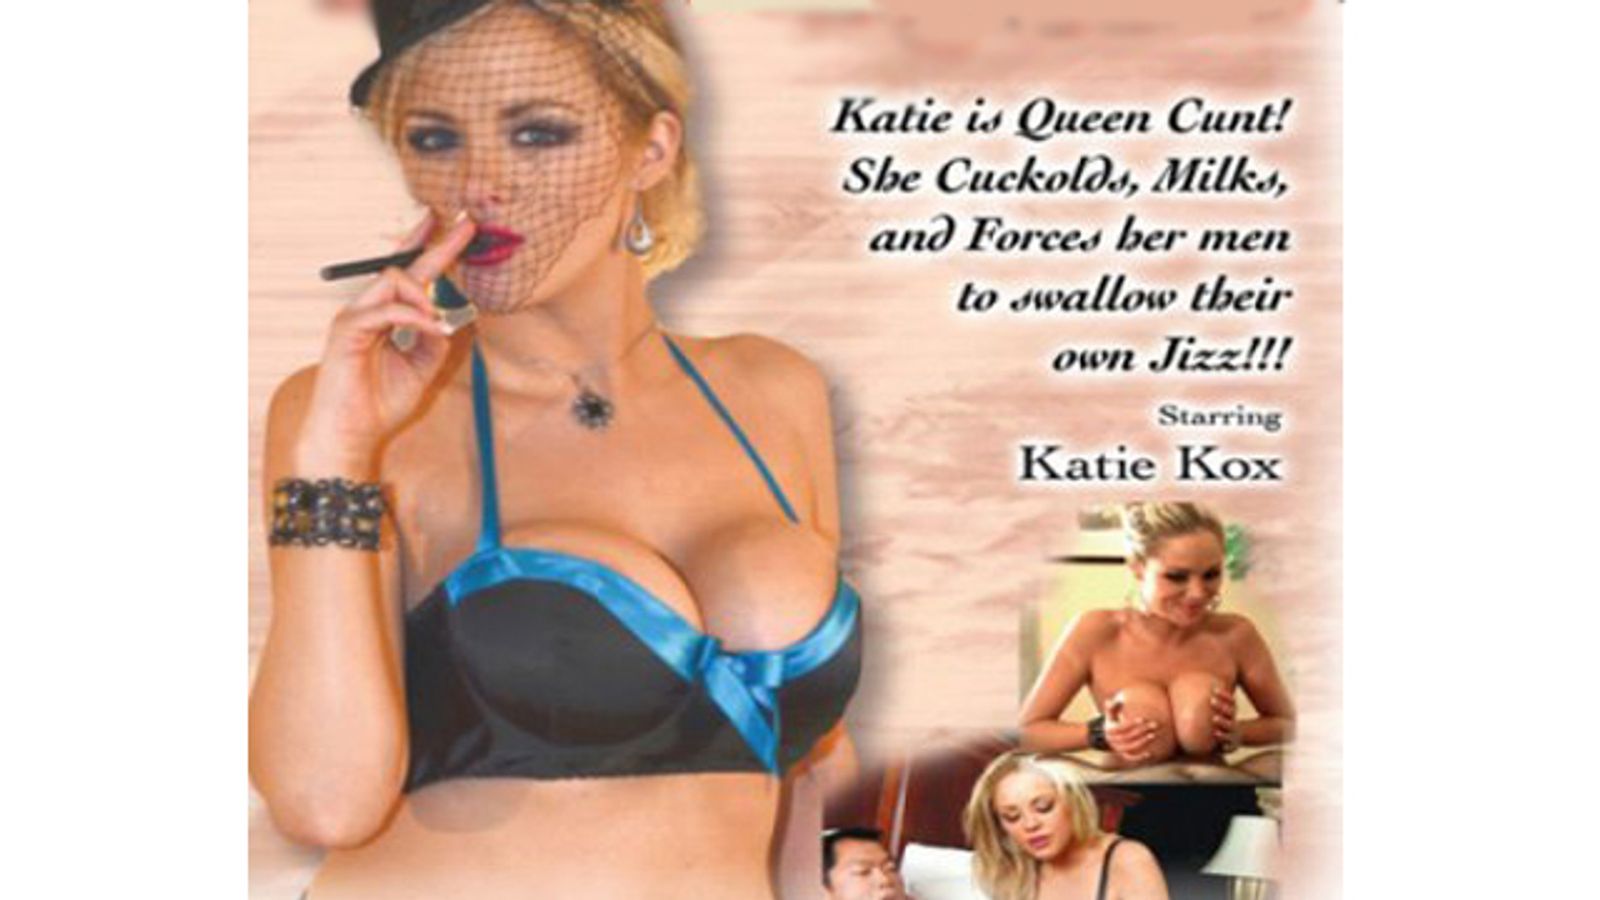 Venus Girls’ Katie Kox Cuckolding Title Earns Critical Praise